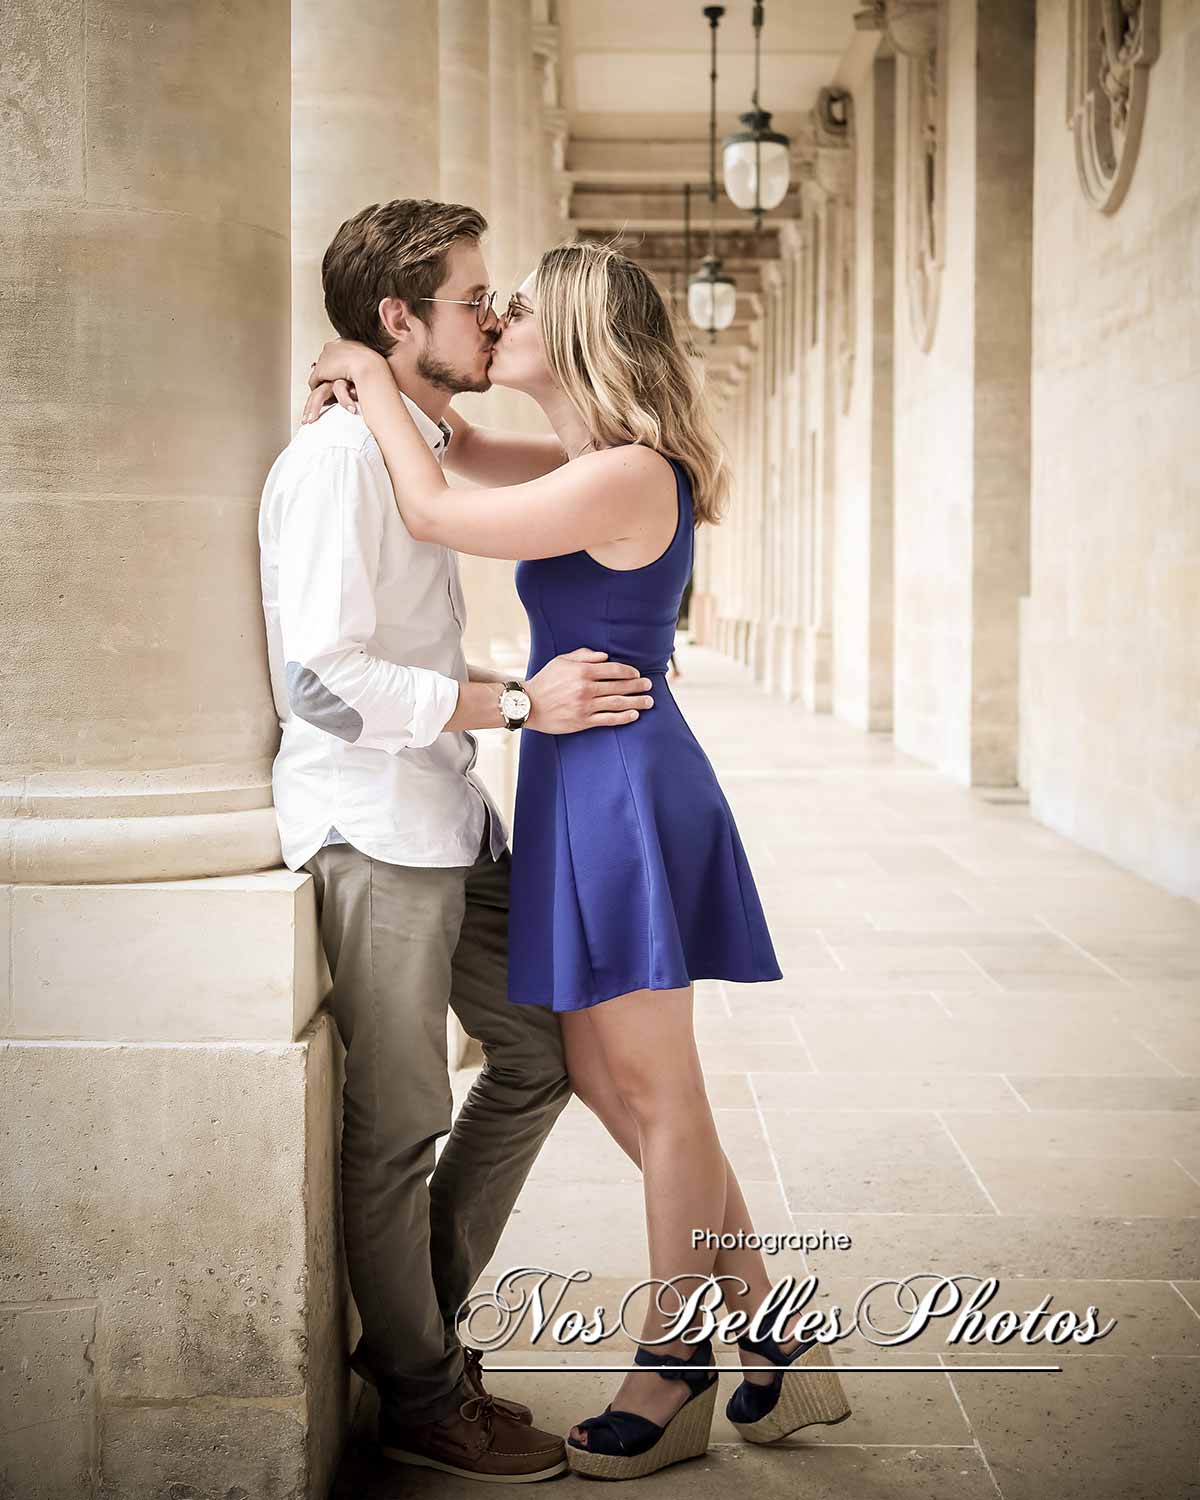 Séance engagement photo avant mariage Palais Royal Paris